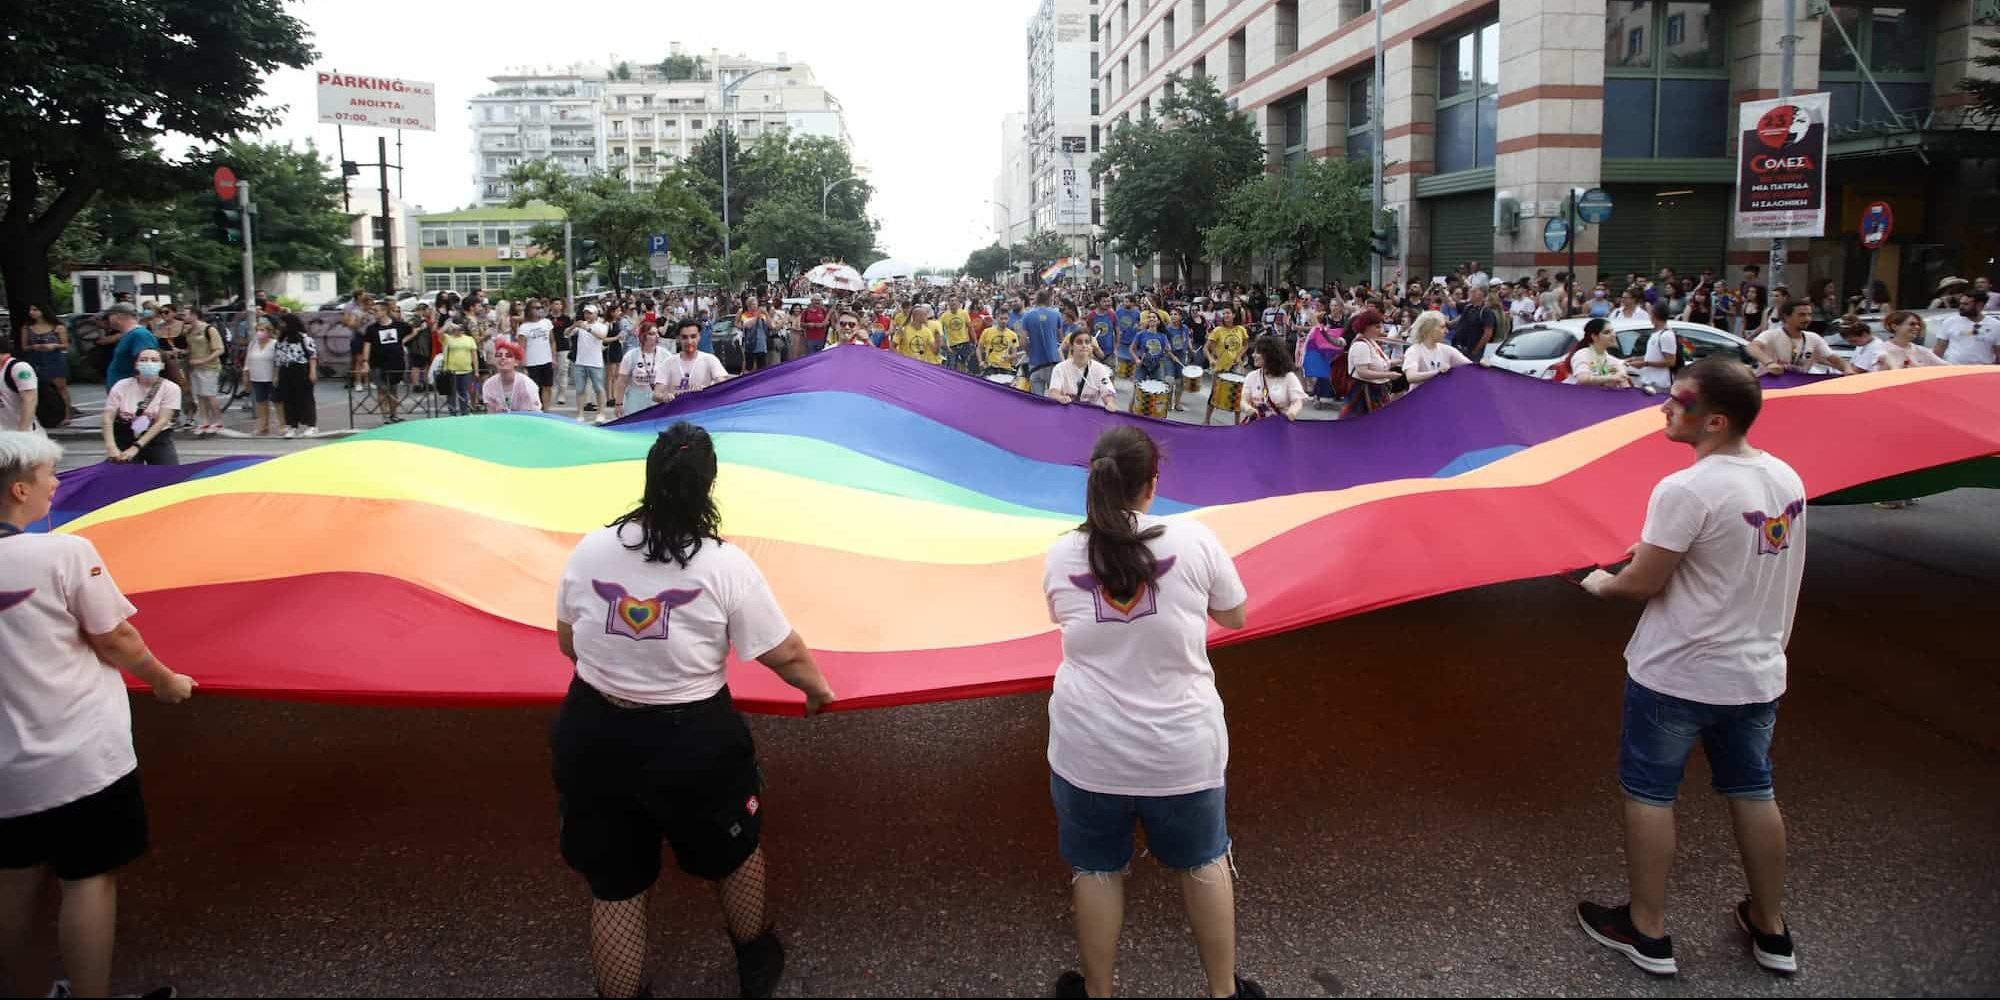 Η κοινότητα των ΛΟΑΤΚΙ γιορτάζει τα 50 χρόνια από το πρώτο Pride στο Λονδίνο